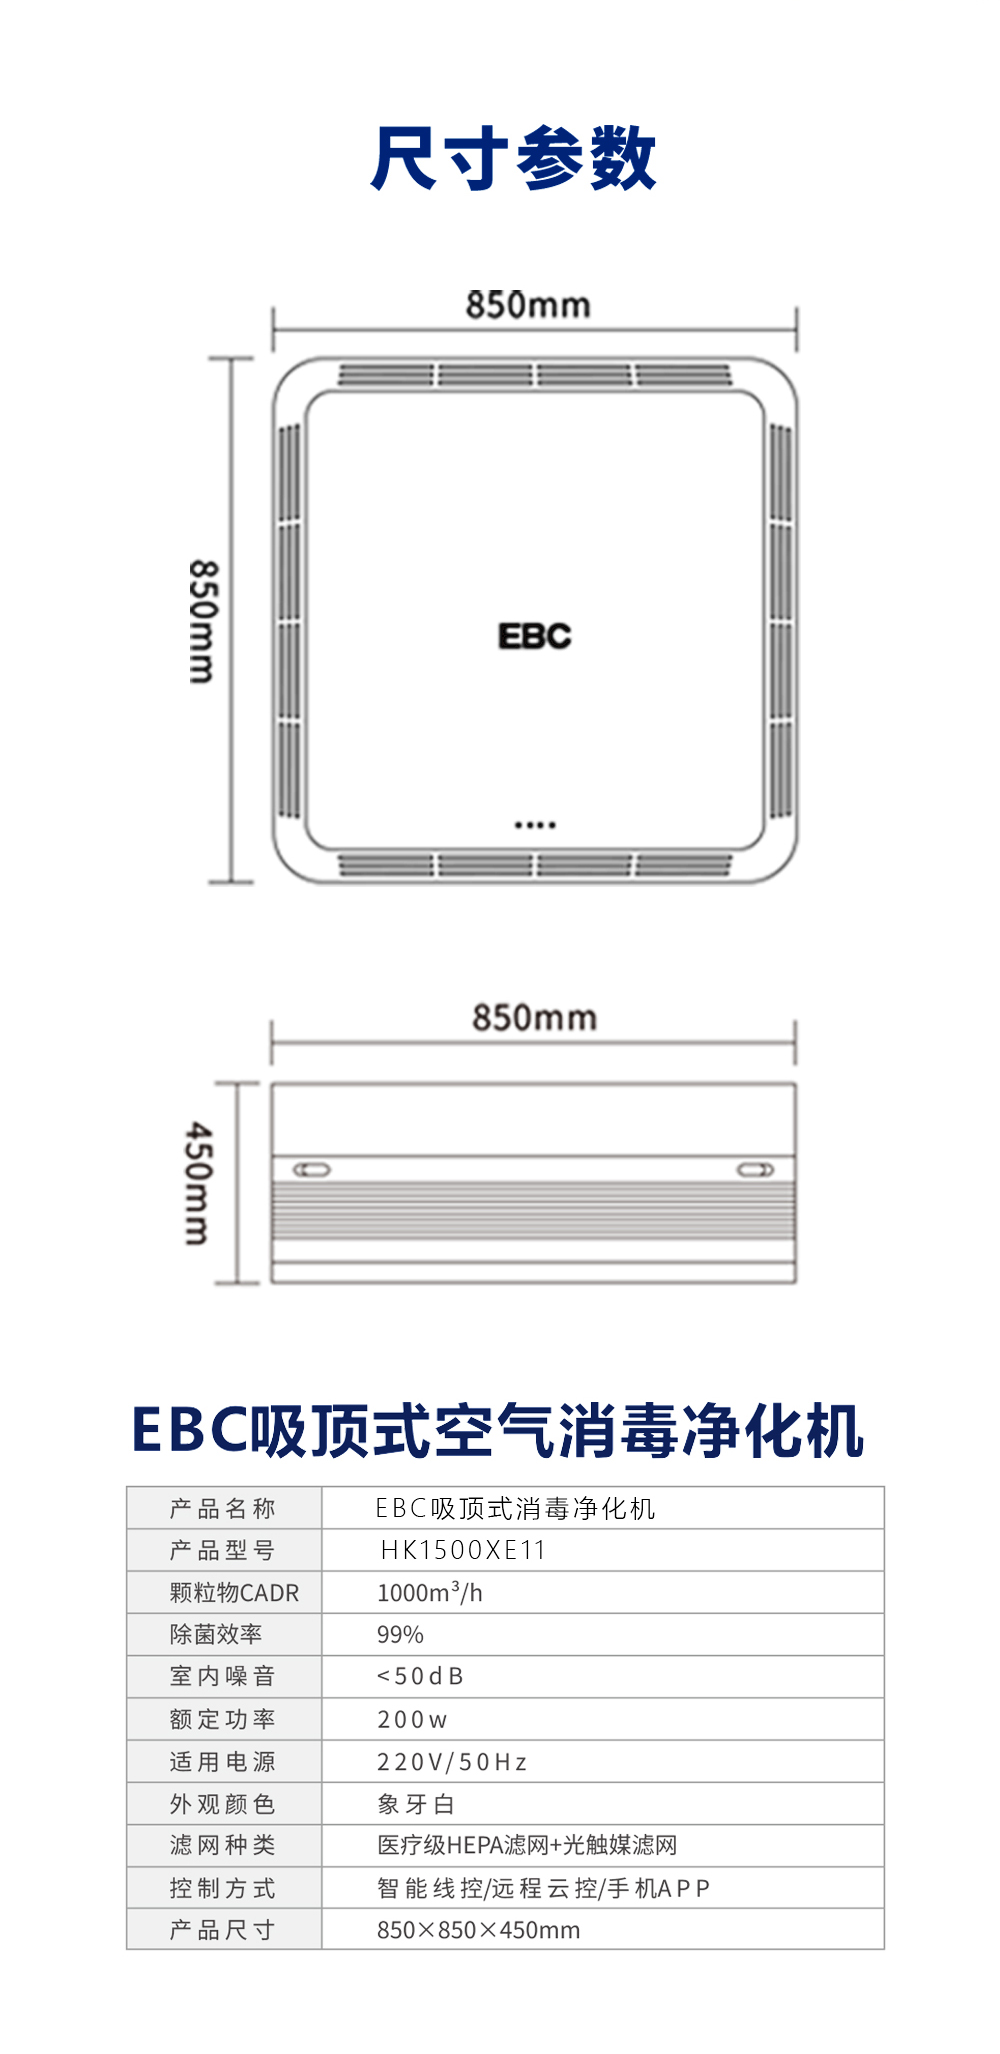 EBC吸顶式空气消毒净化机（紫外光触媒+医疗级HEPA滤网，杀菌率达99.76%）